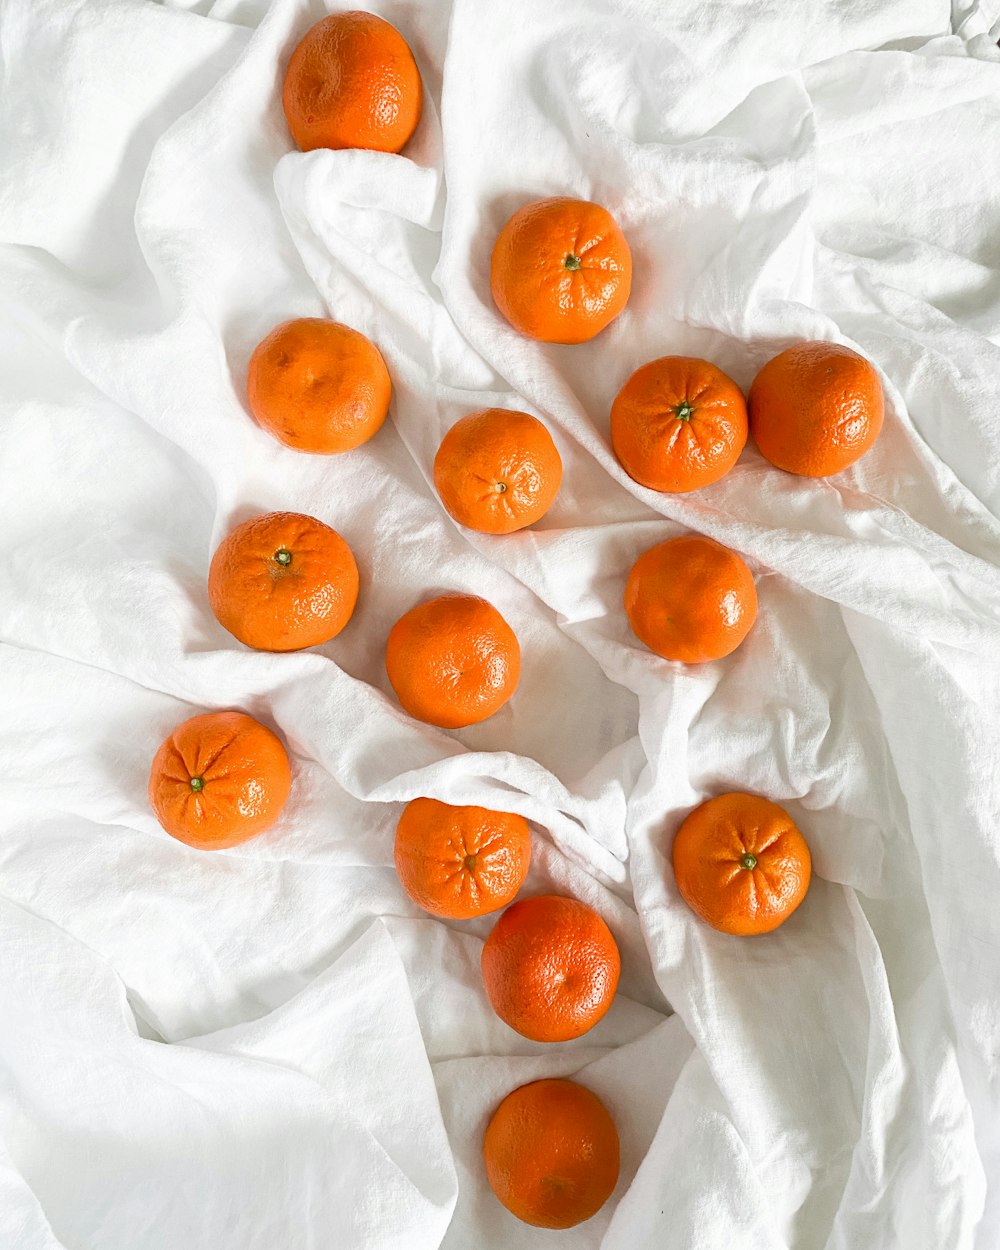 orange fruits on white textile